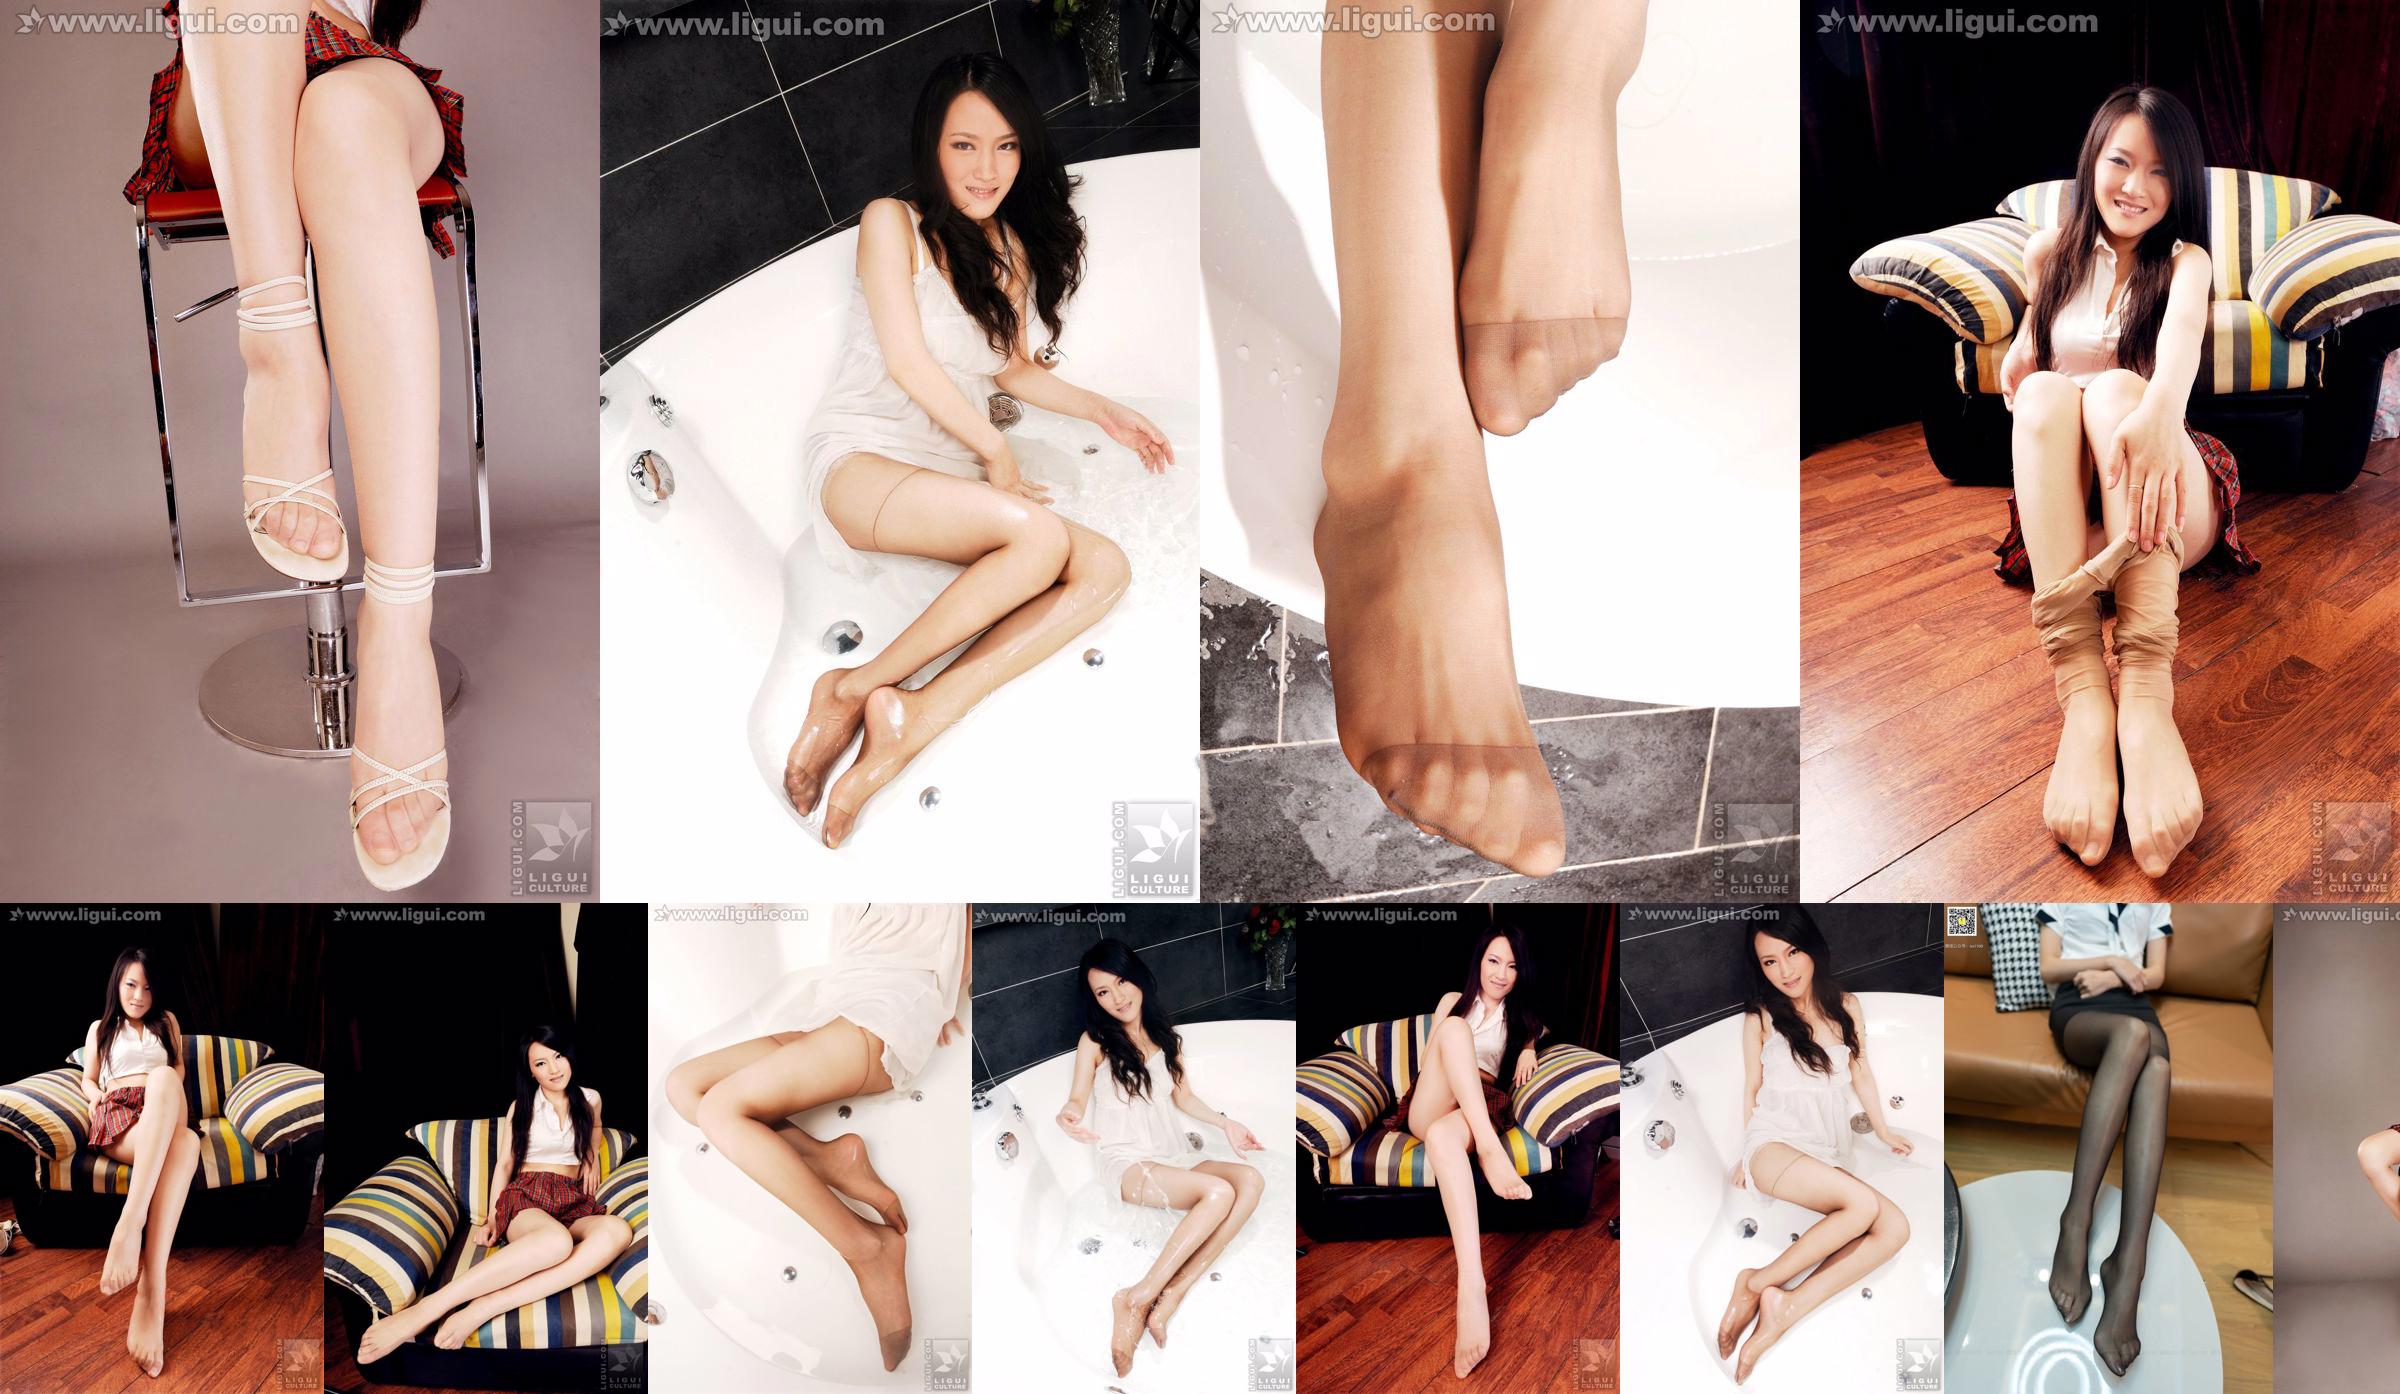 Model Wen Ting "Stoking Daging Manis dan Lucu dengan Sepatu Hak Tinggi" [丽 柜 LiGui] Foto kaki indah dan kaki giok No.0407f7 Halaman 12